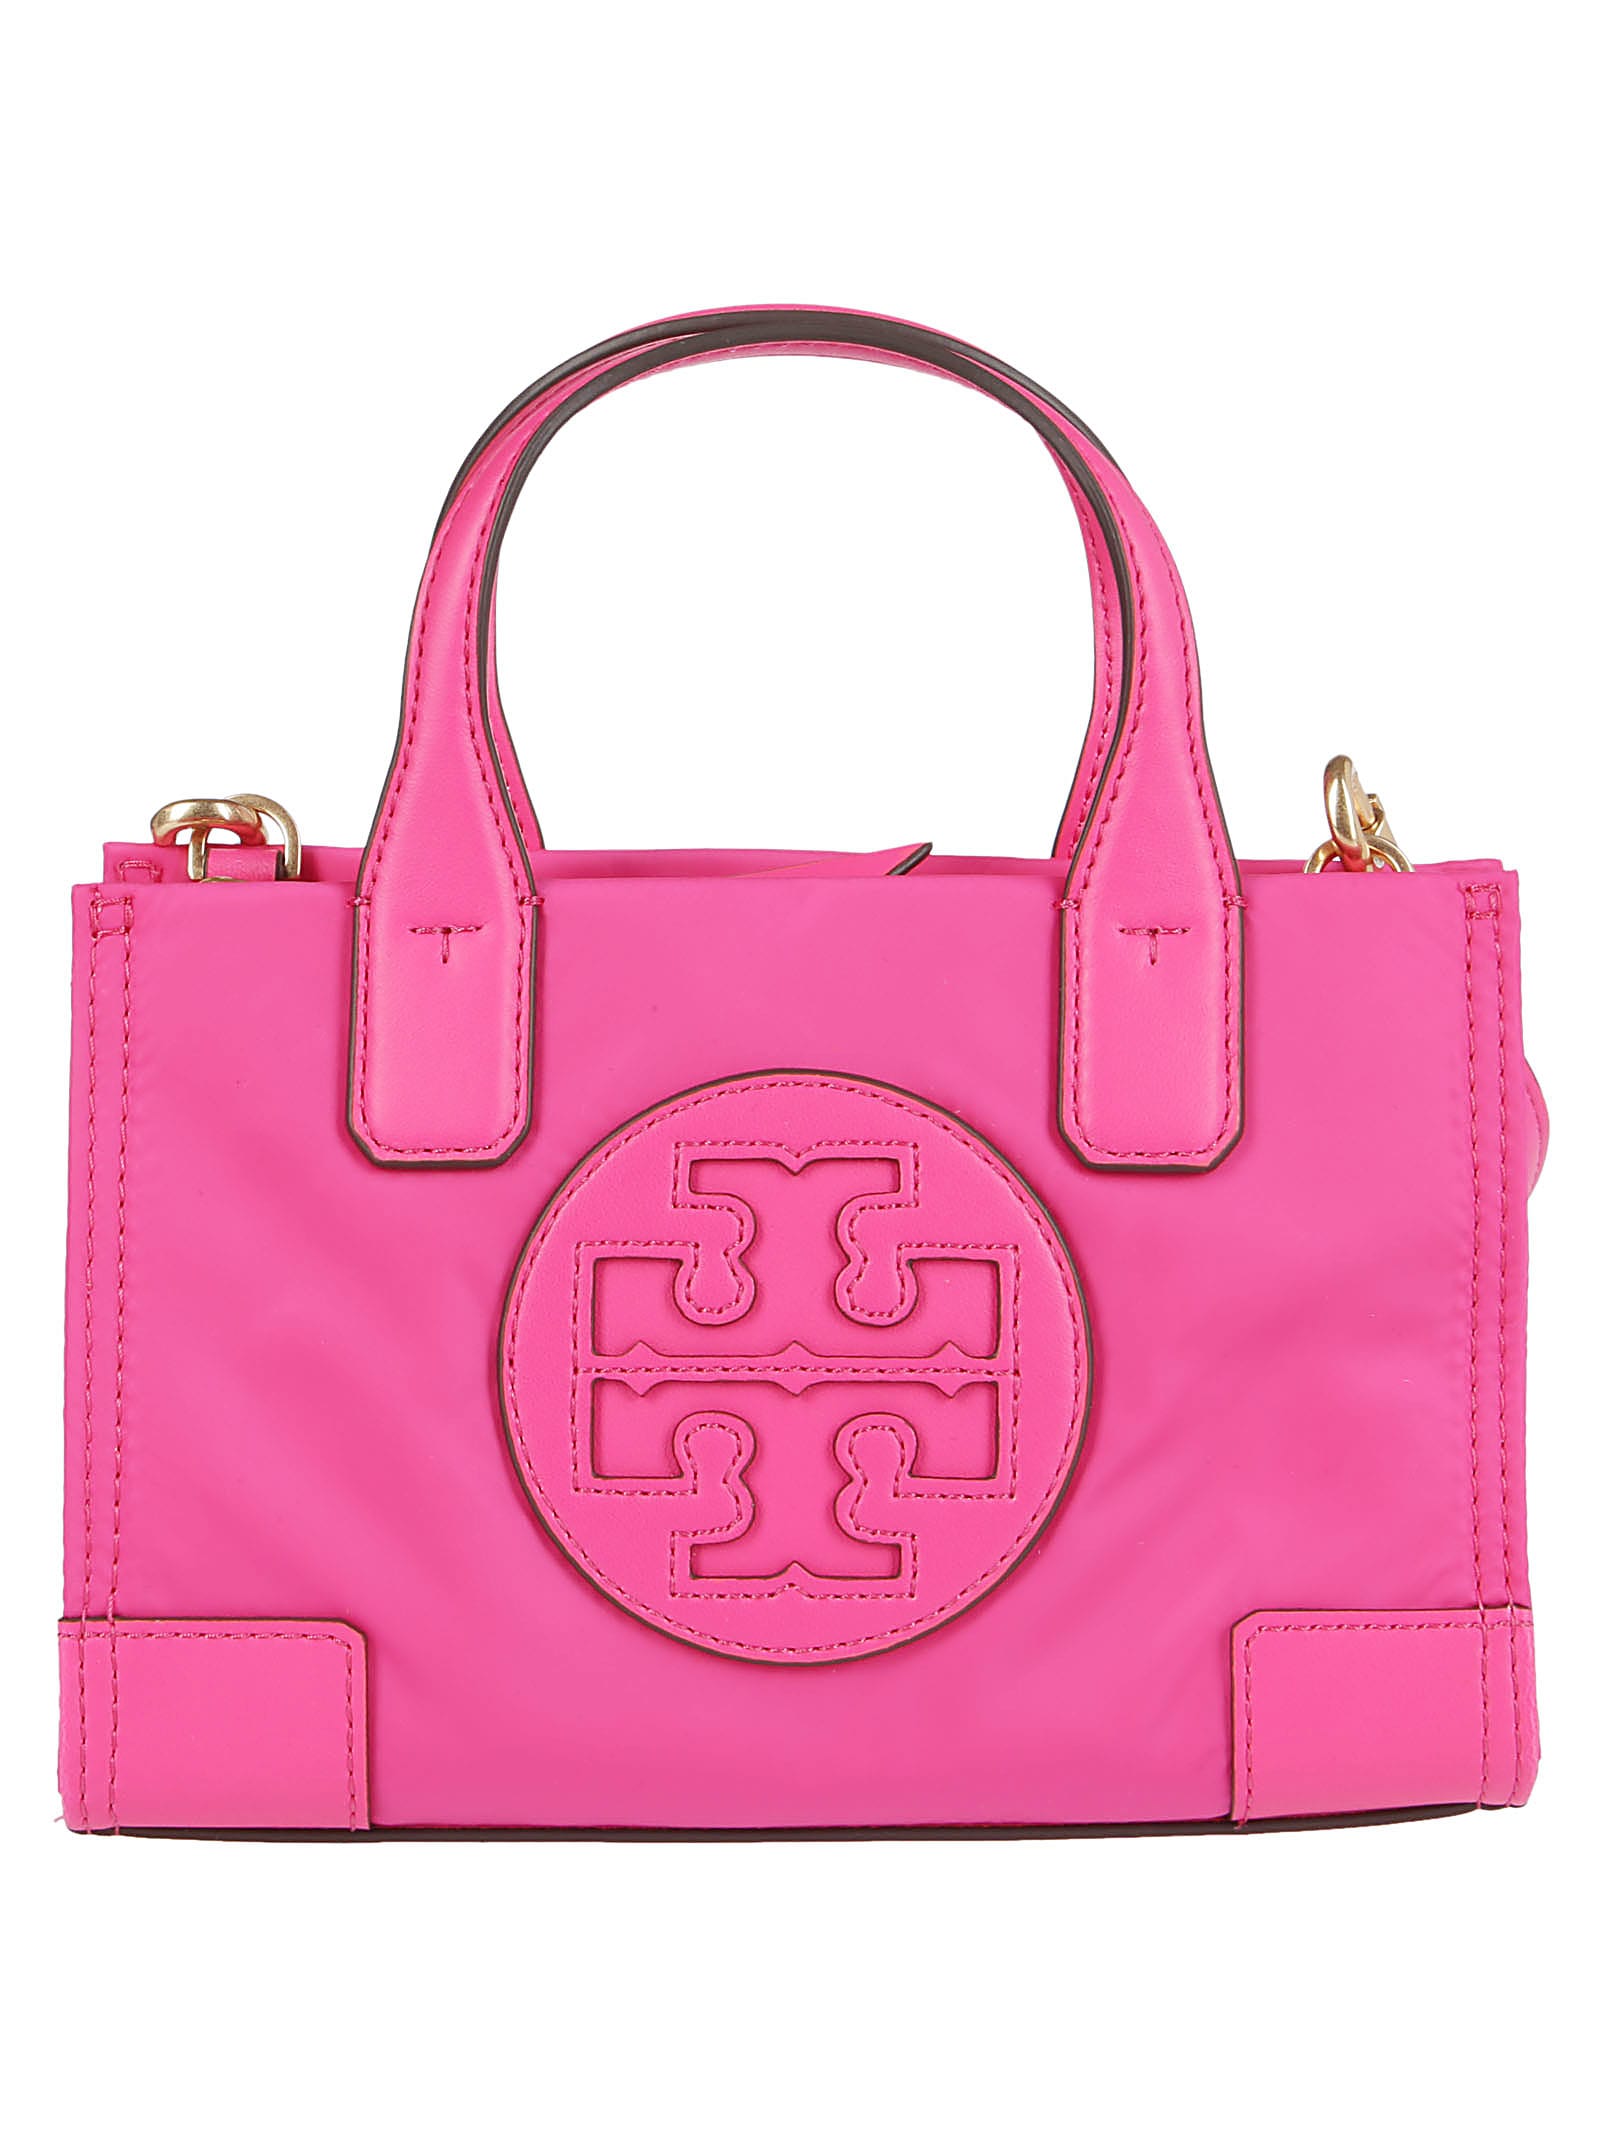 tory burch pink tote bag